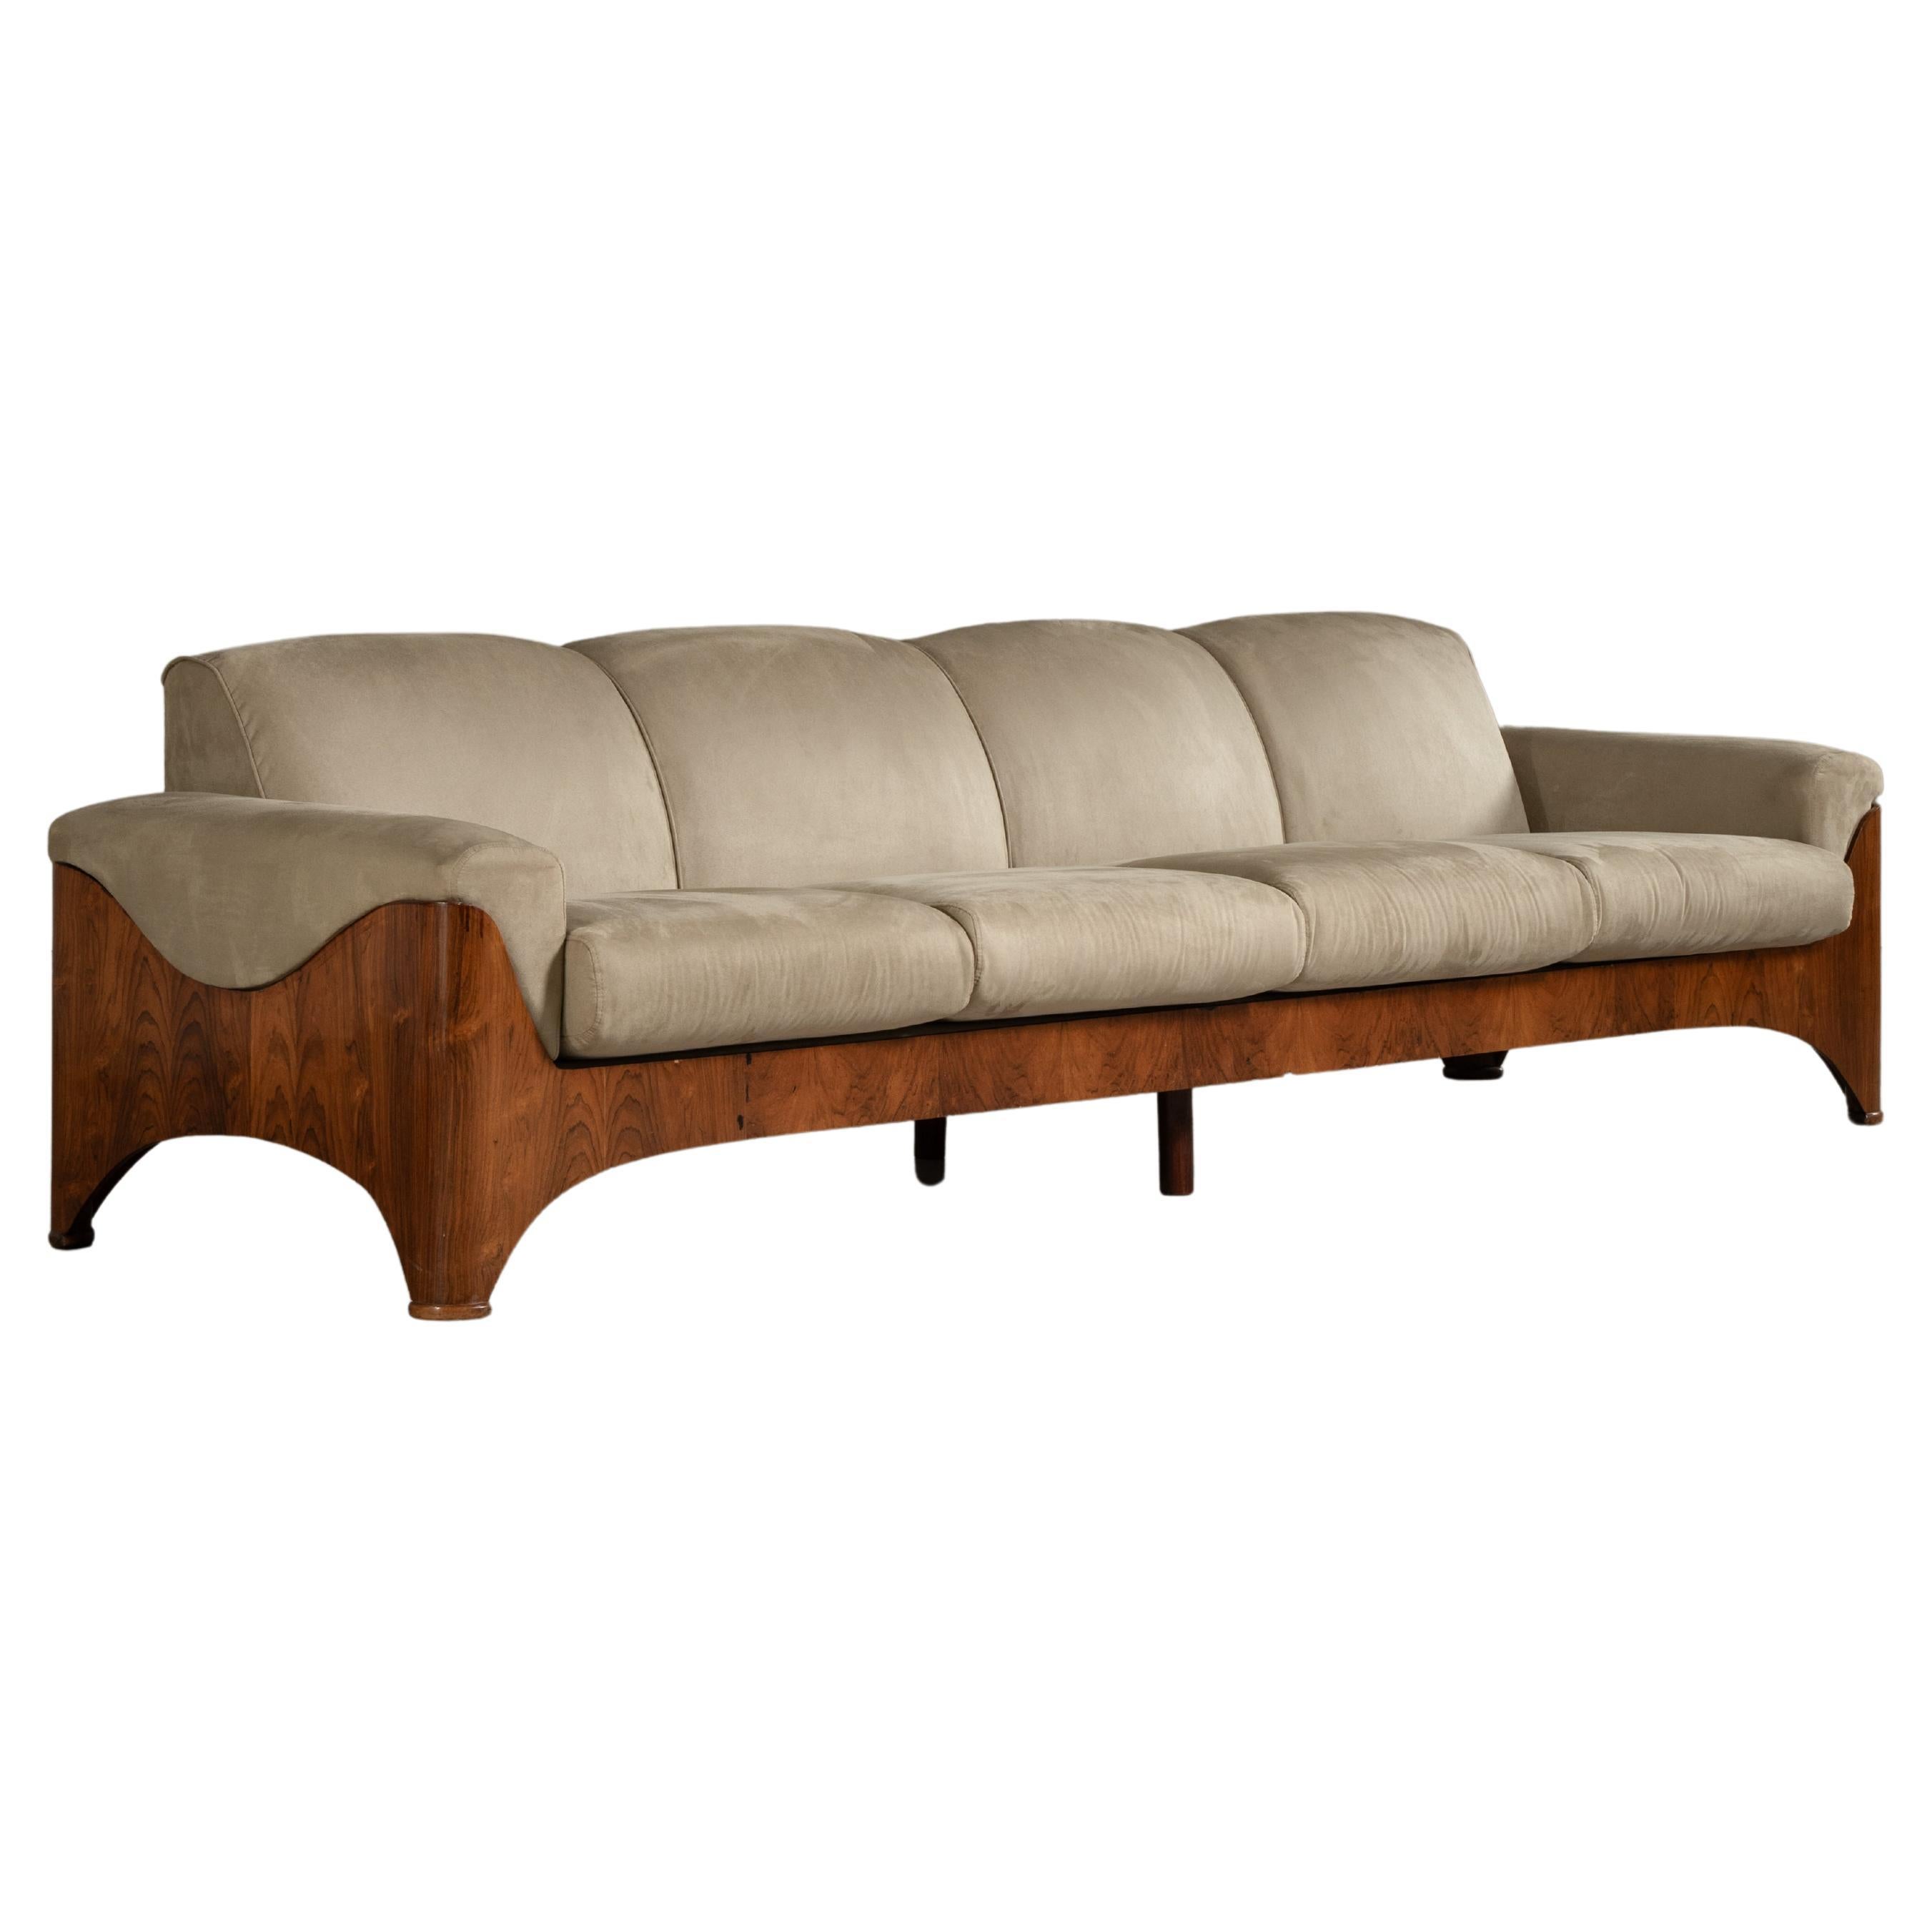 Canapé curviligne quatre places en bois dur tropical plaqué, modernisme brésilien